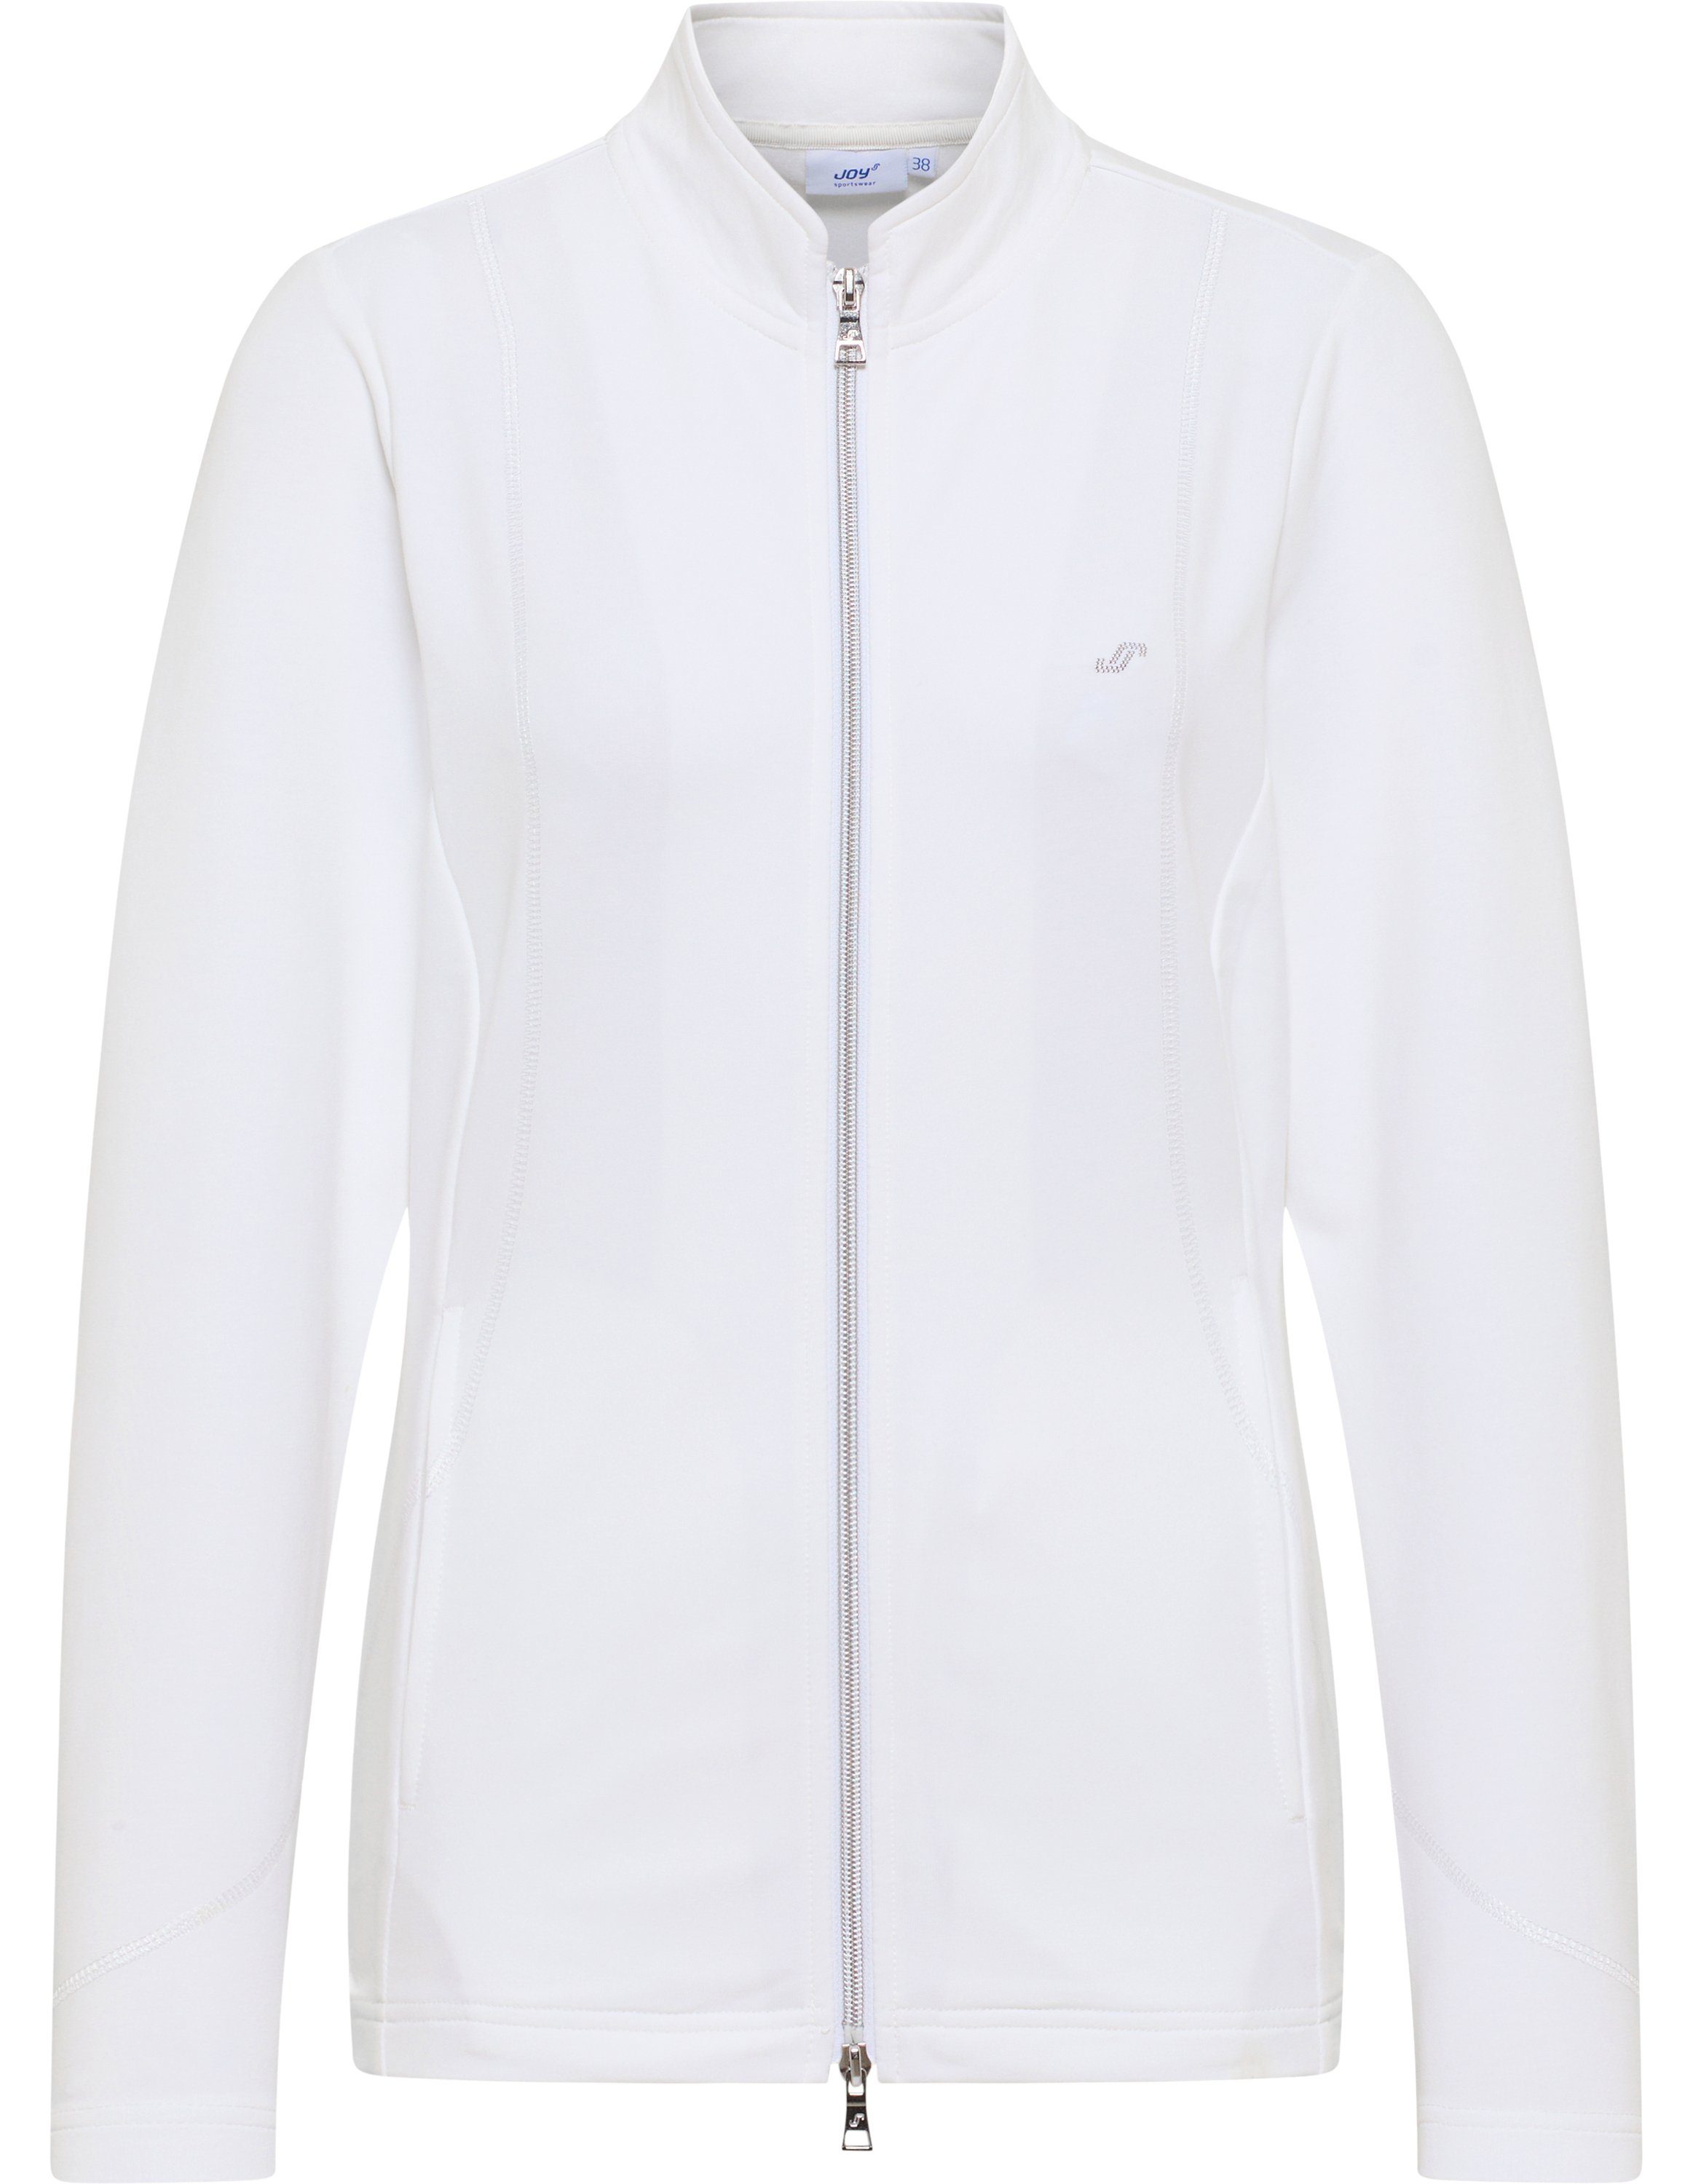 Joy Sportswear Trainingsjacke Jacke DORIT white | 